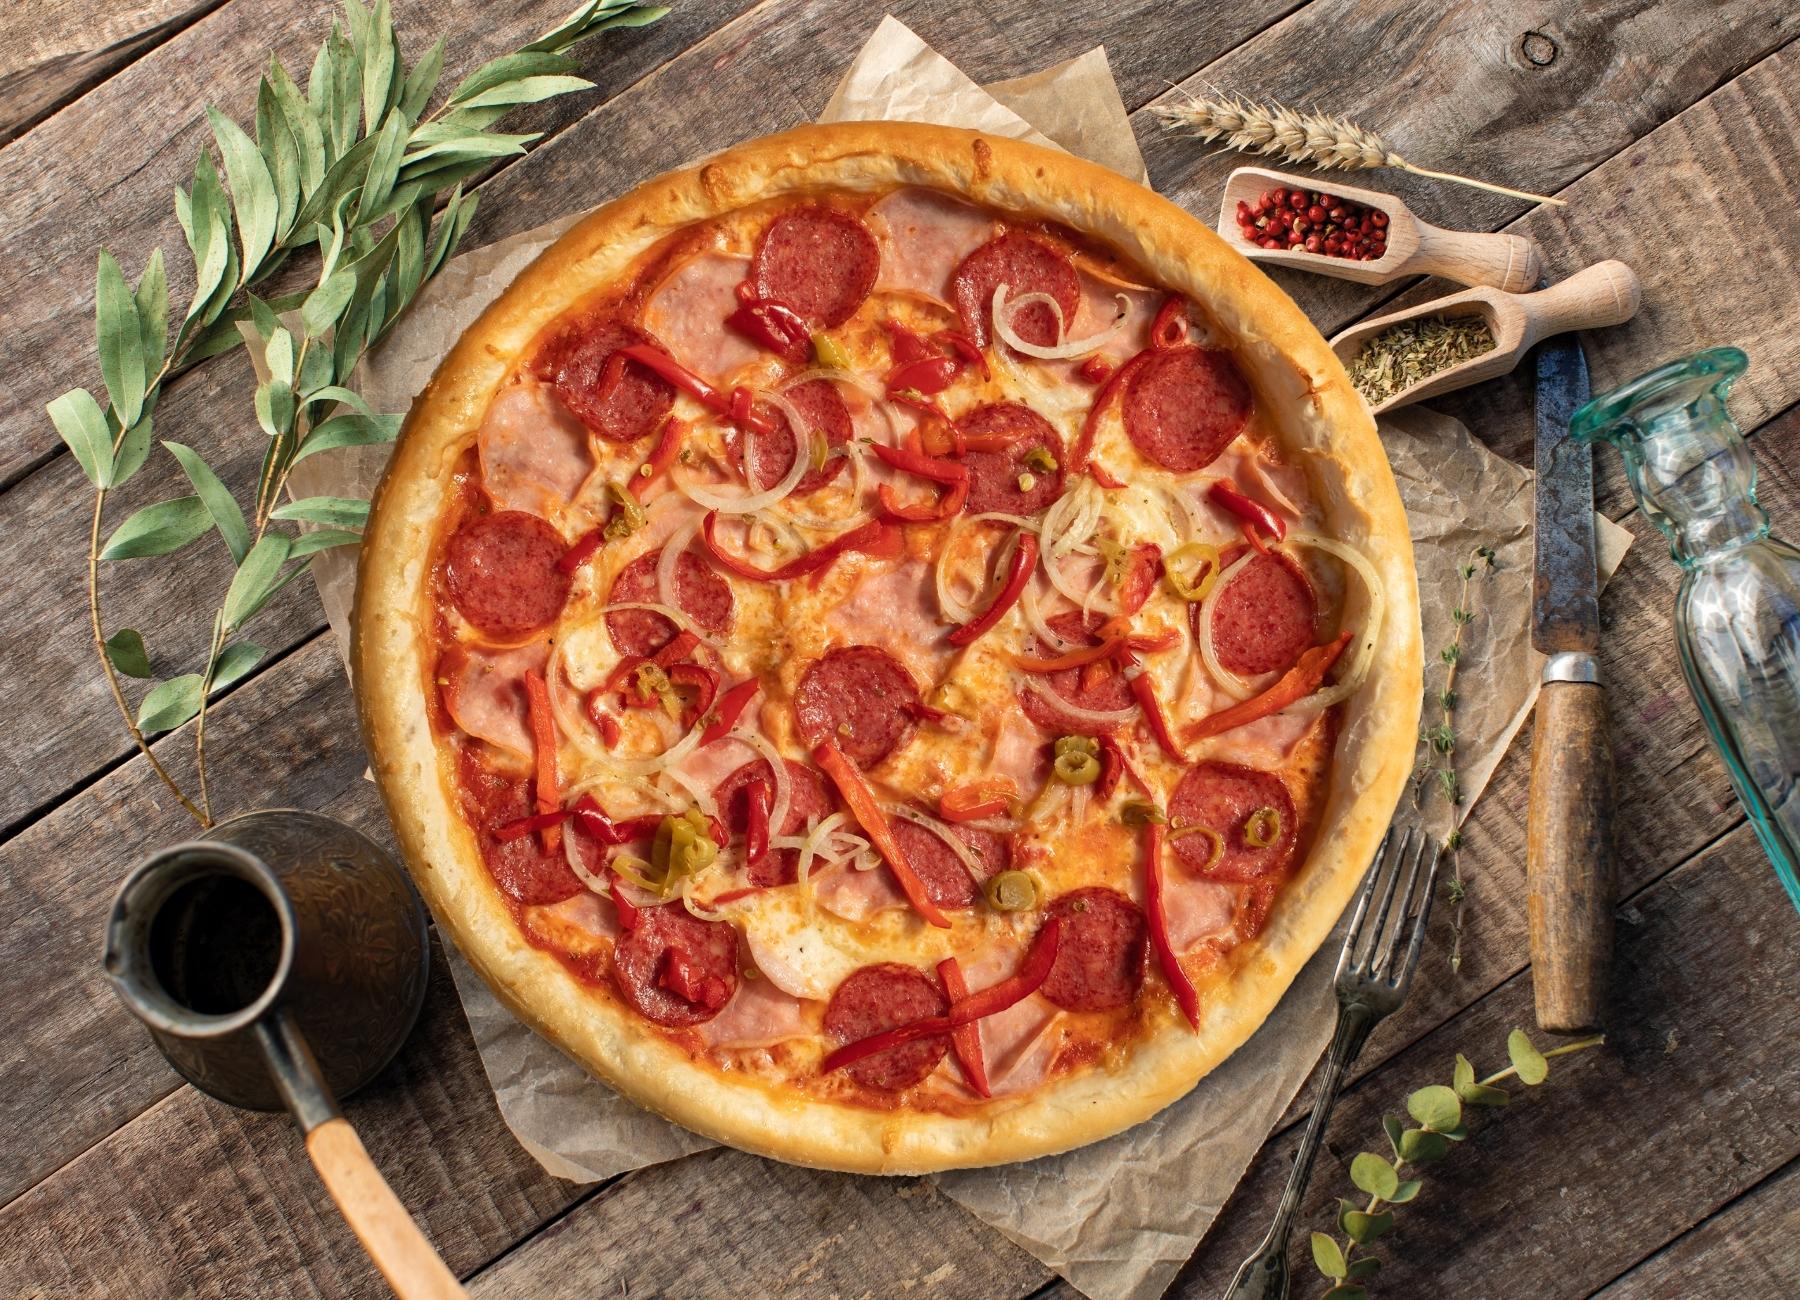 я хочу пиццу с перцем луком пепперони и оливками фото 99